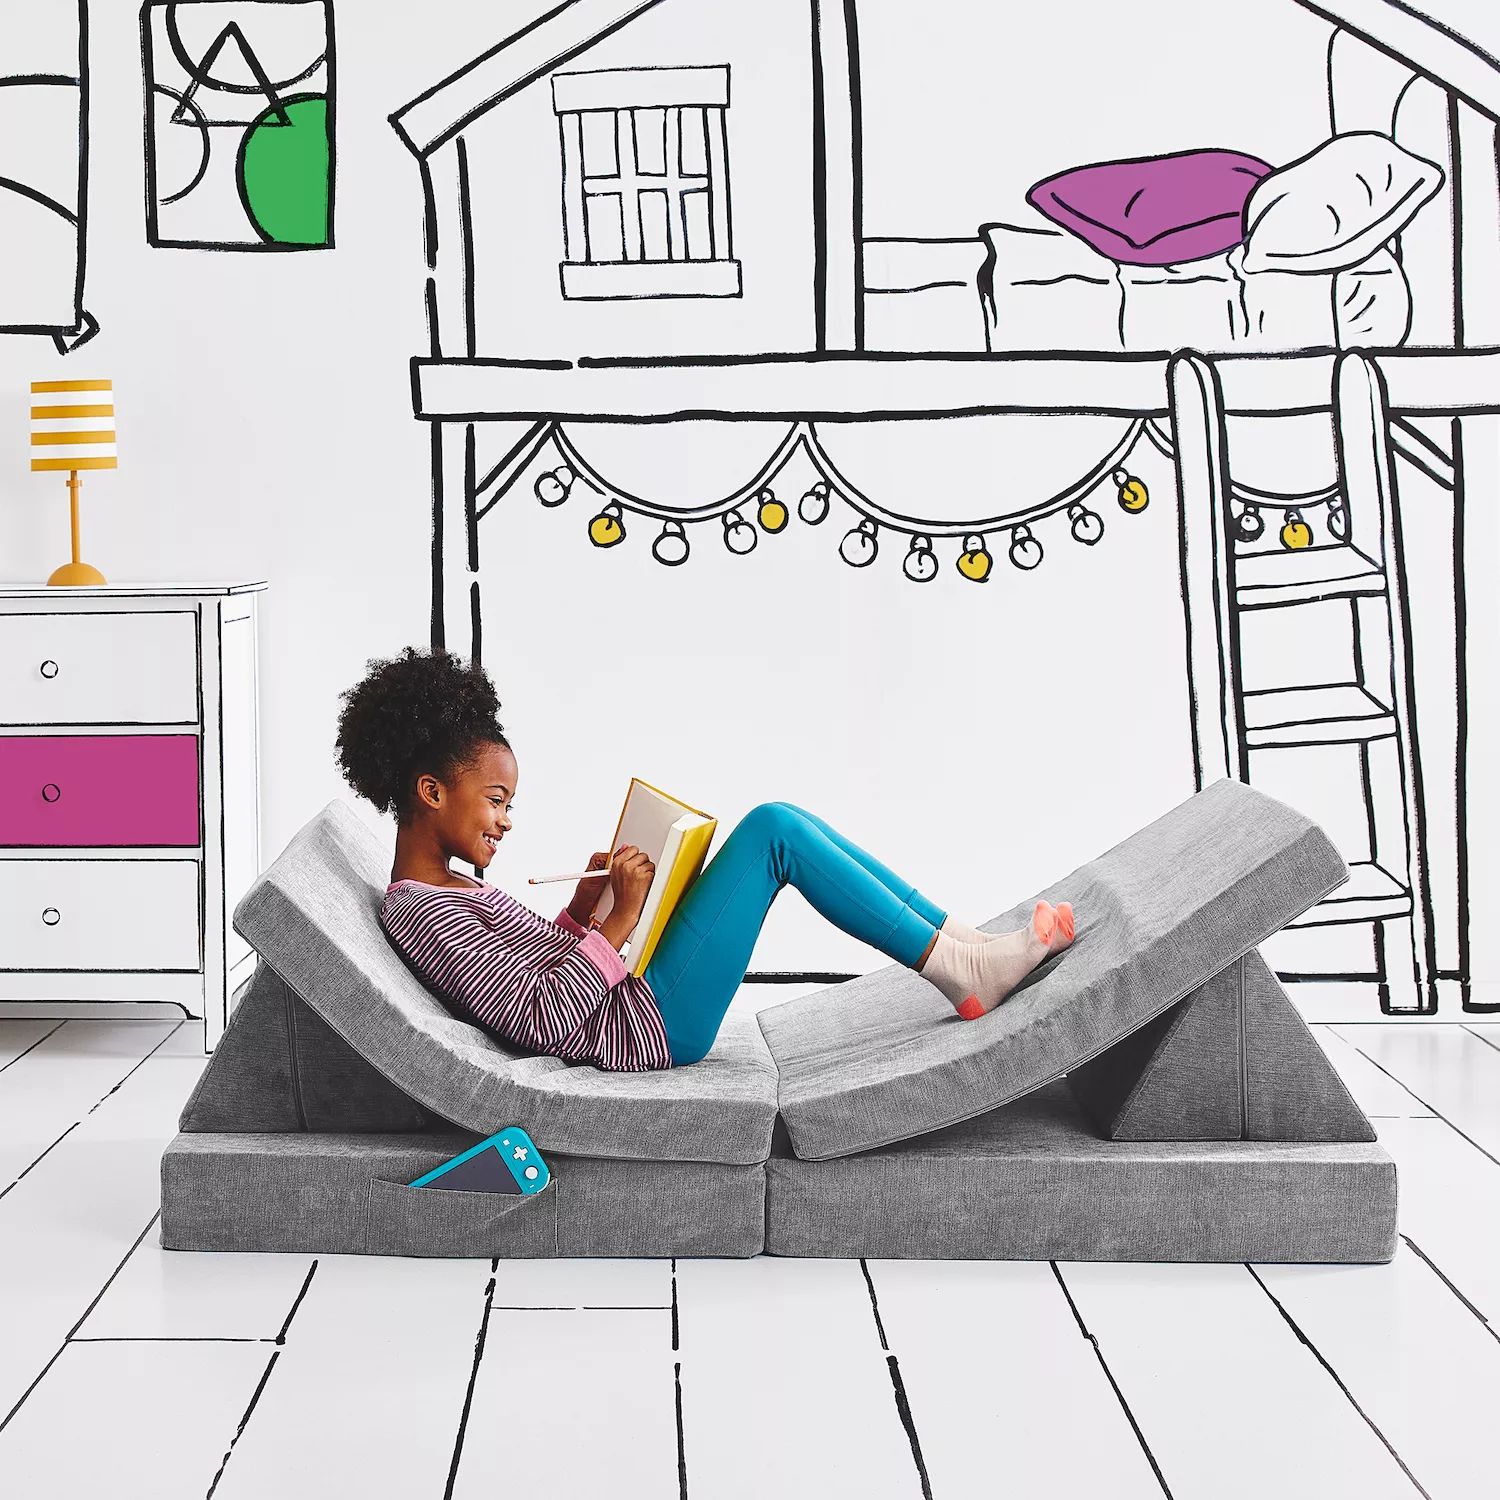 Складной трансформируемый игровой диван для детей и малышей Yourigami YOURIGAMI PLAY SOFA, зеленый cx children s sofa cartoon sofa cute crown small sofa